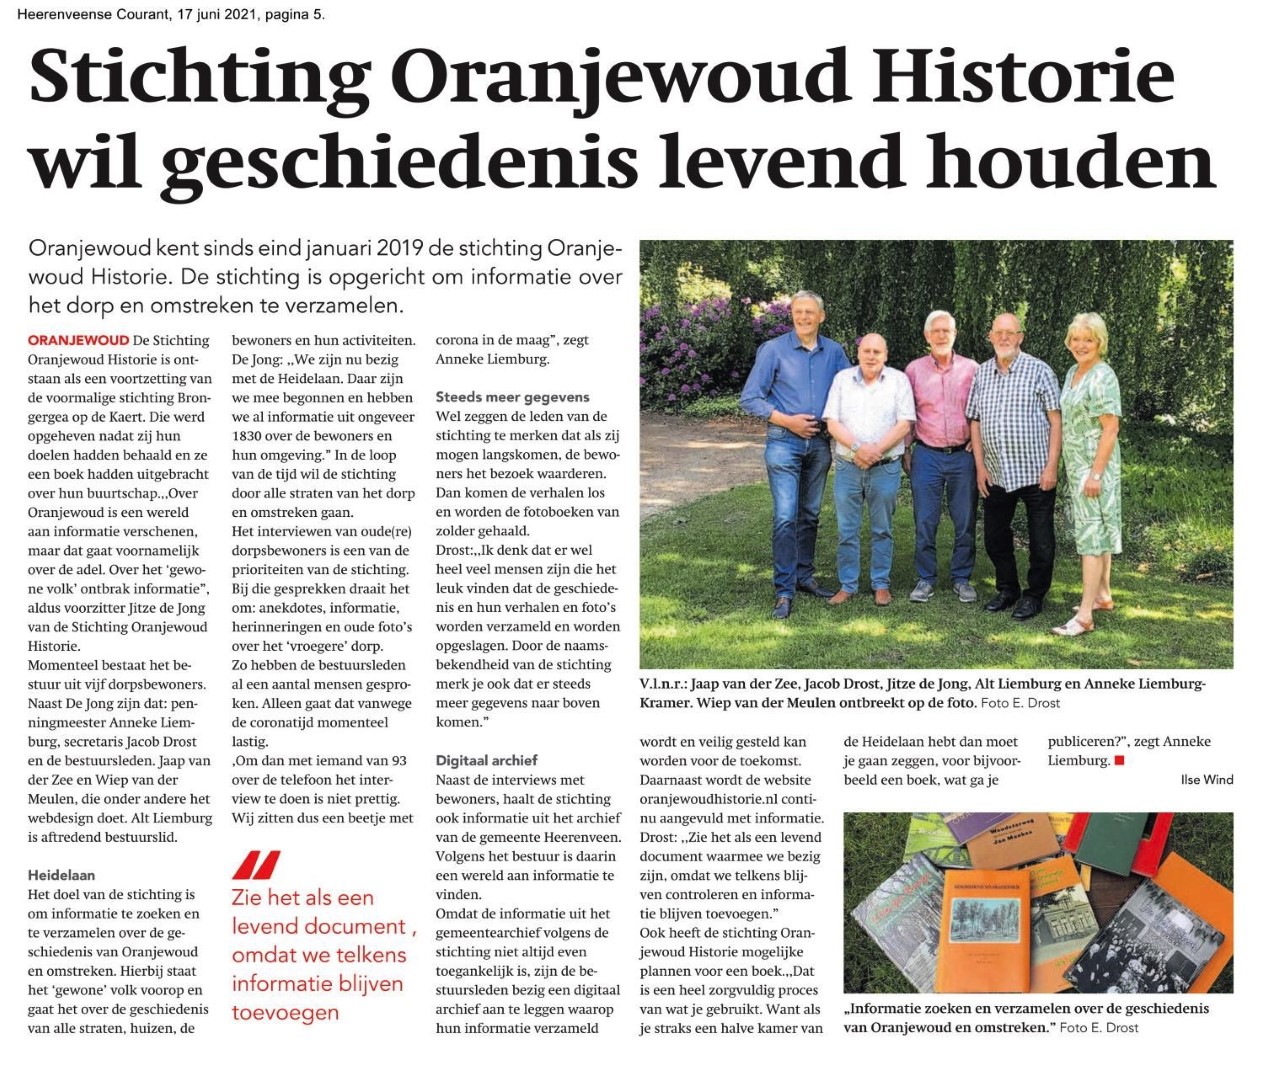 9945 2021 07 17 Stichting Oranjewoud Historie wil geschiedenis levend houden